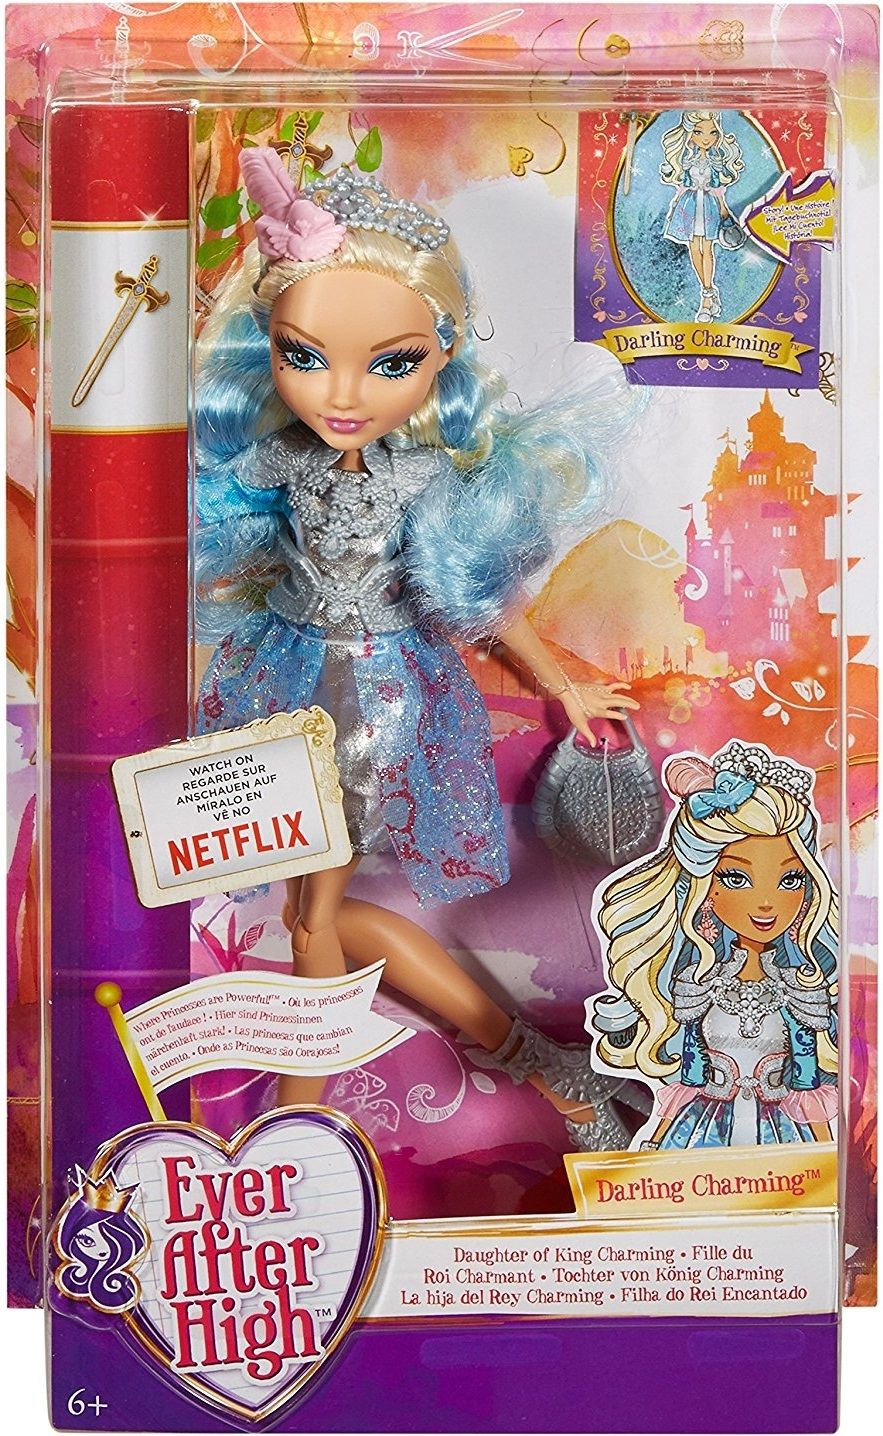 Барби (Barbie) ᐈ Купить куклу Барби в Киеве | Цены, фото, отзывы на Panama